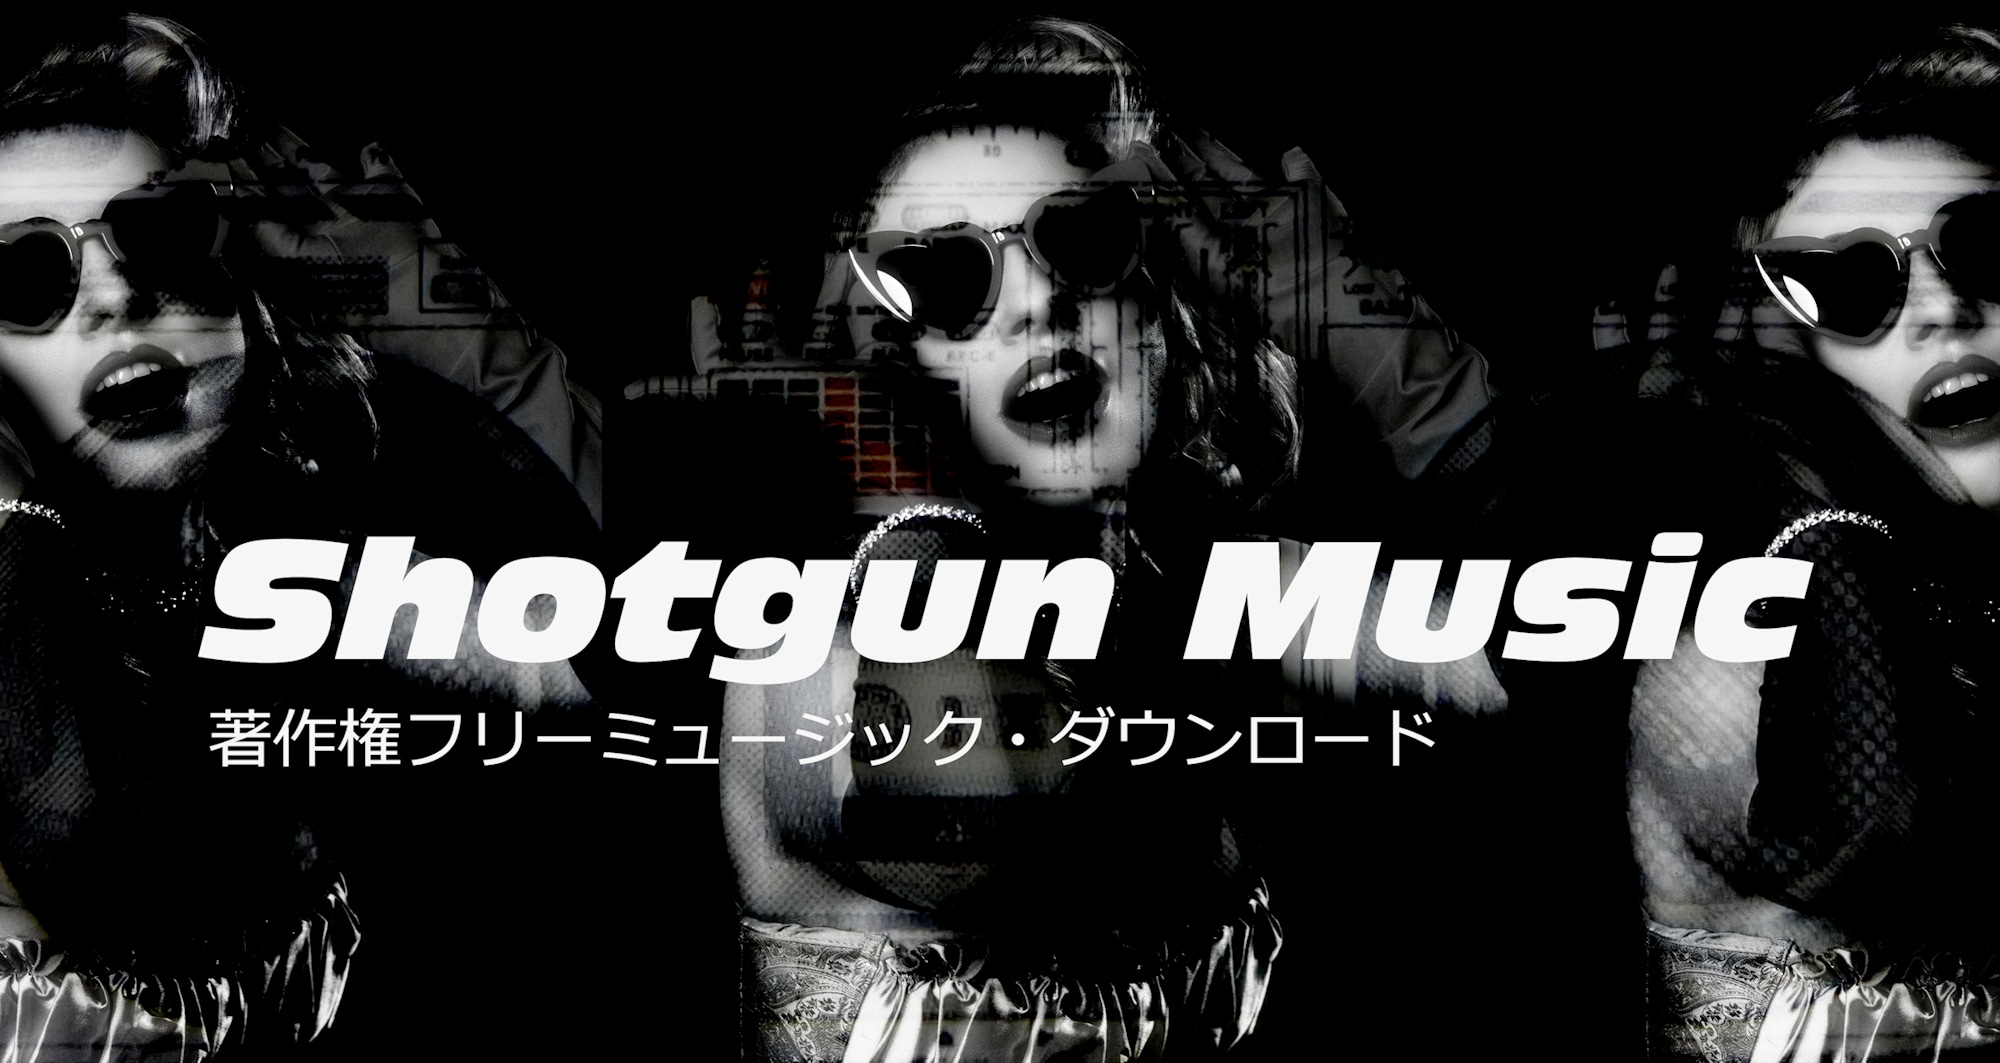 Shotgun Music Promotion